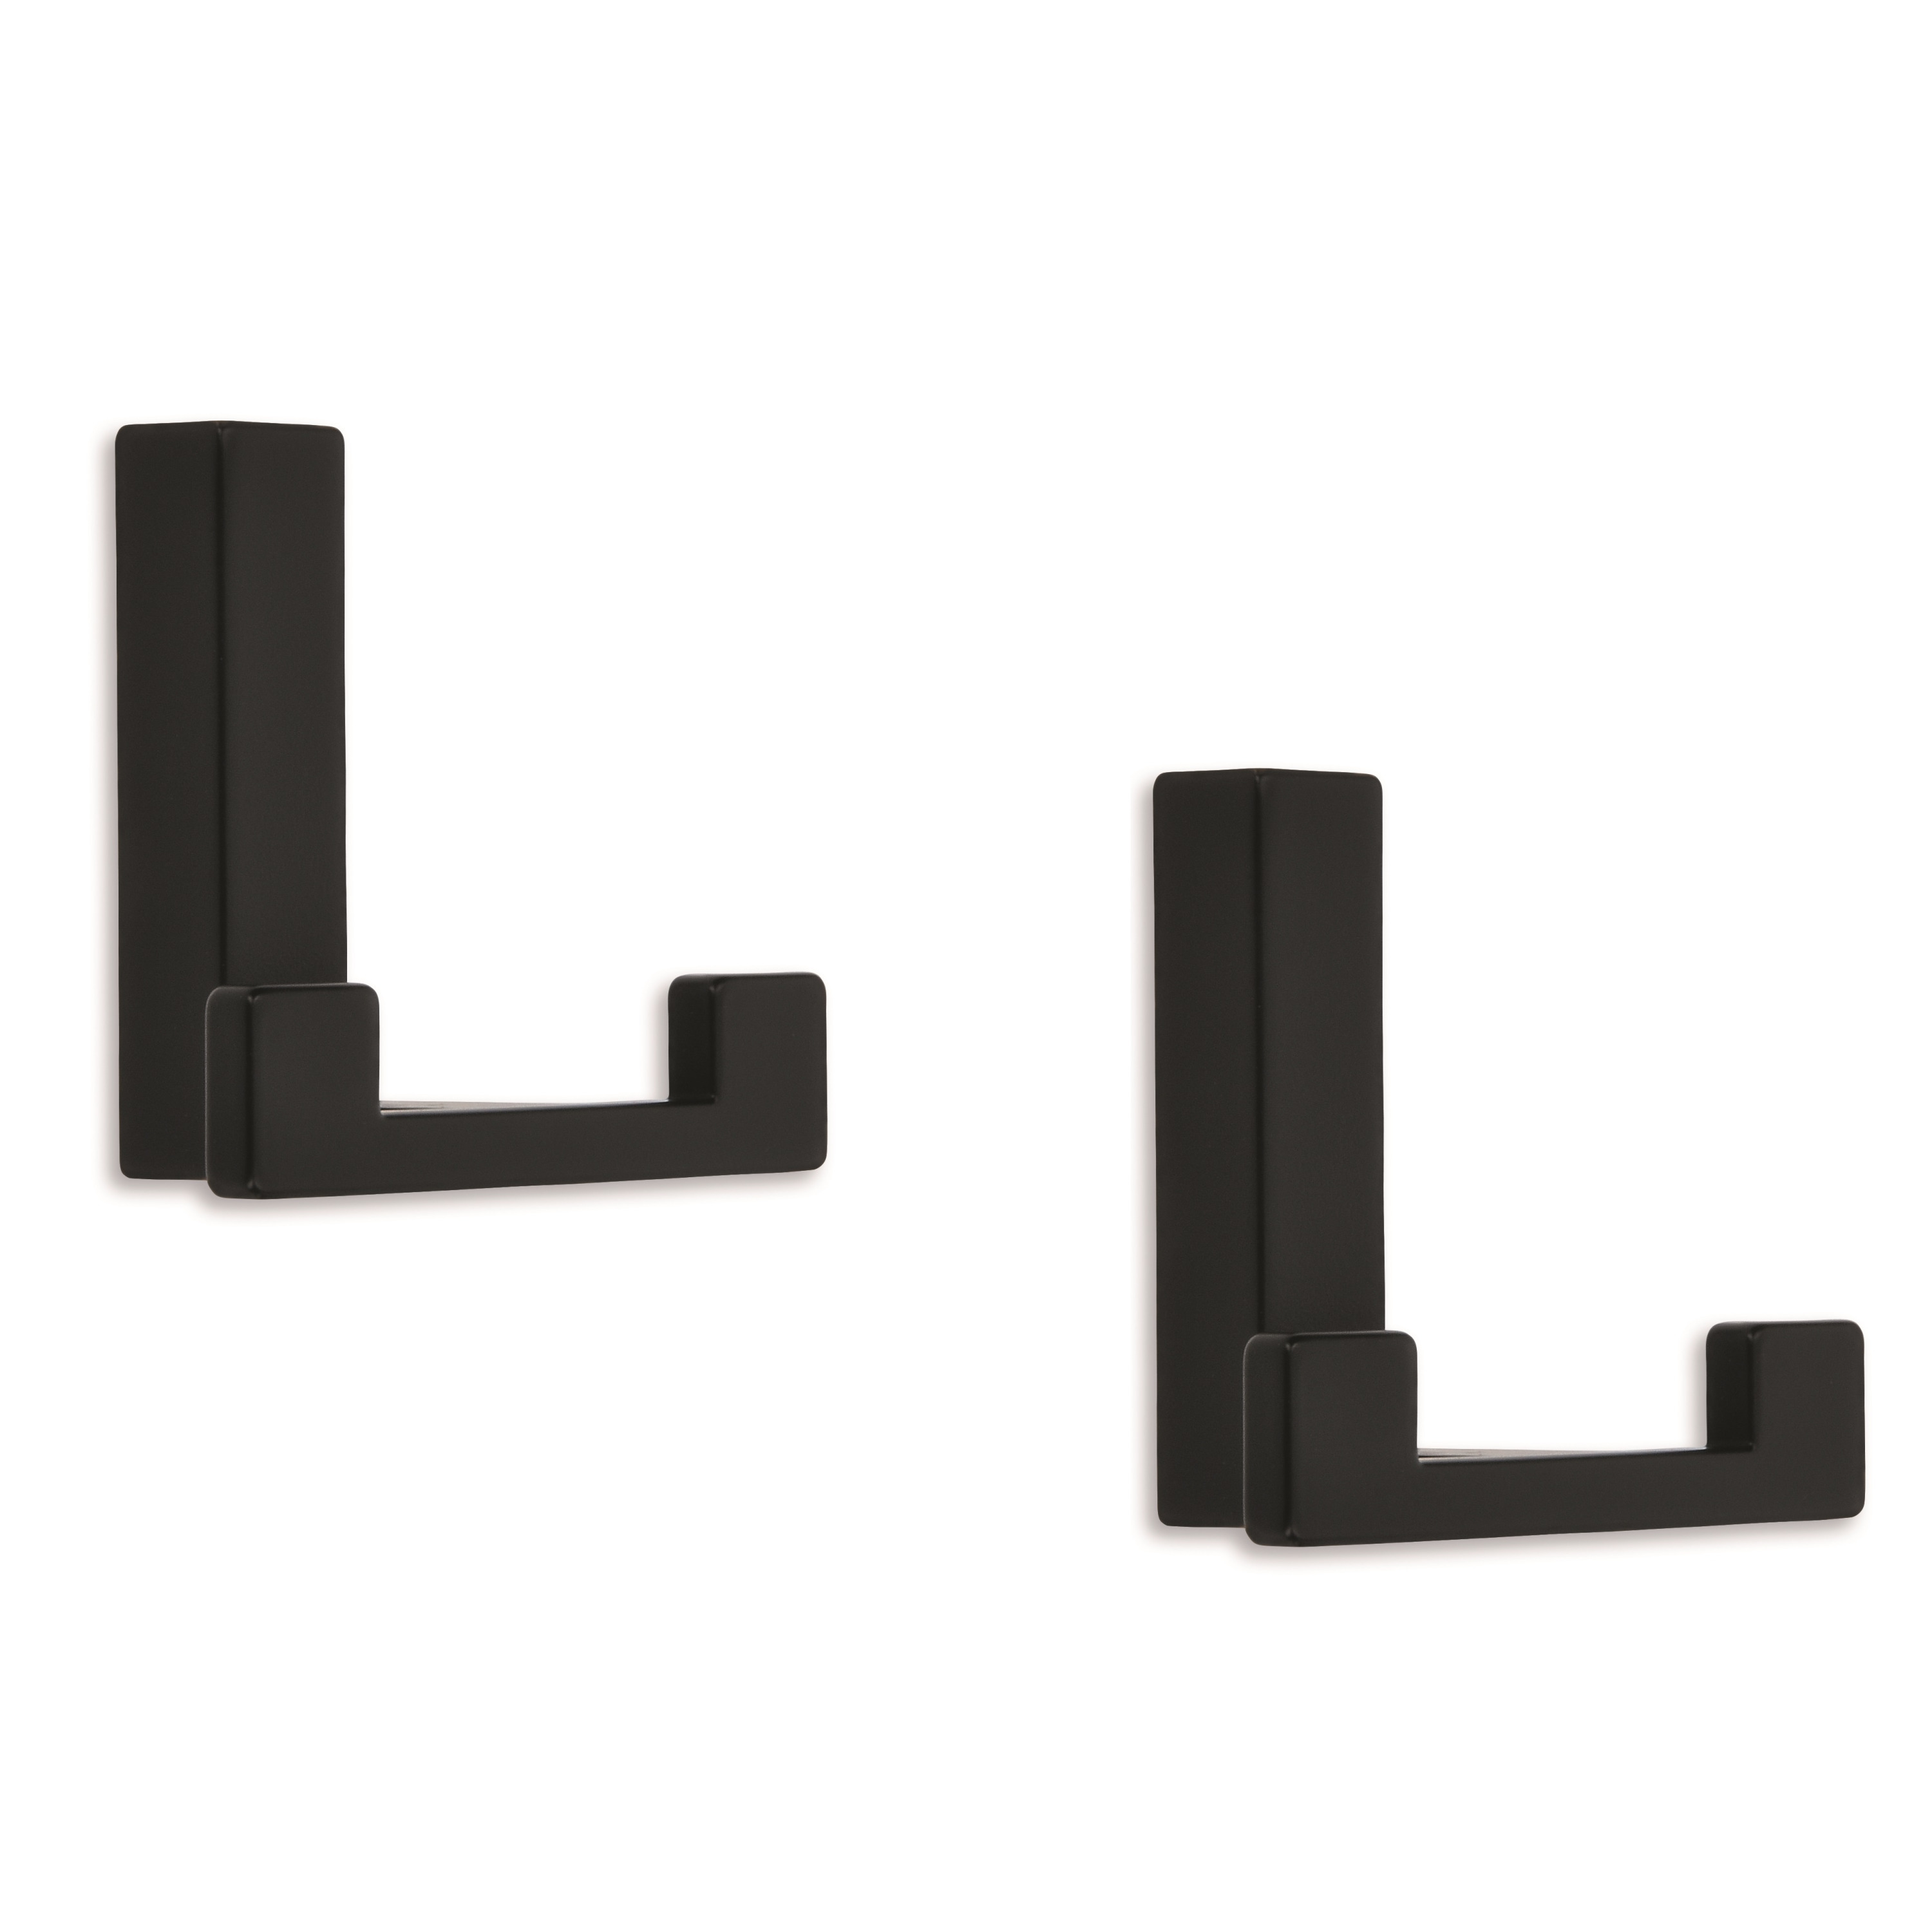 5x Luxe kapstokhaken-jashaken-kapstokhaakjes metaal modern zwart dubbele haak 4 x 6,1 cm